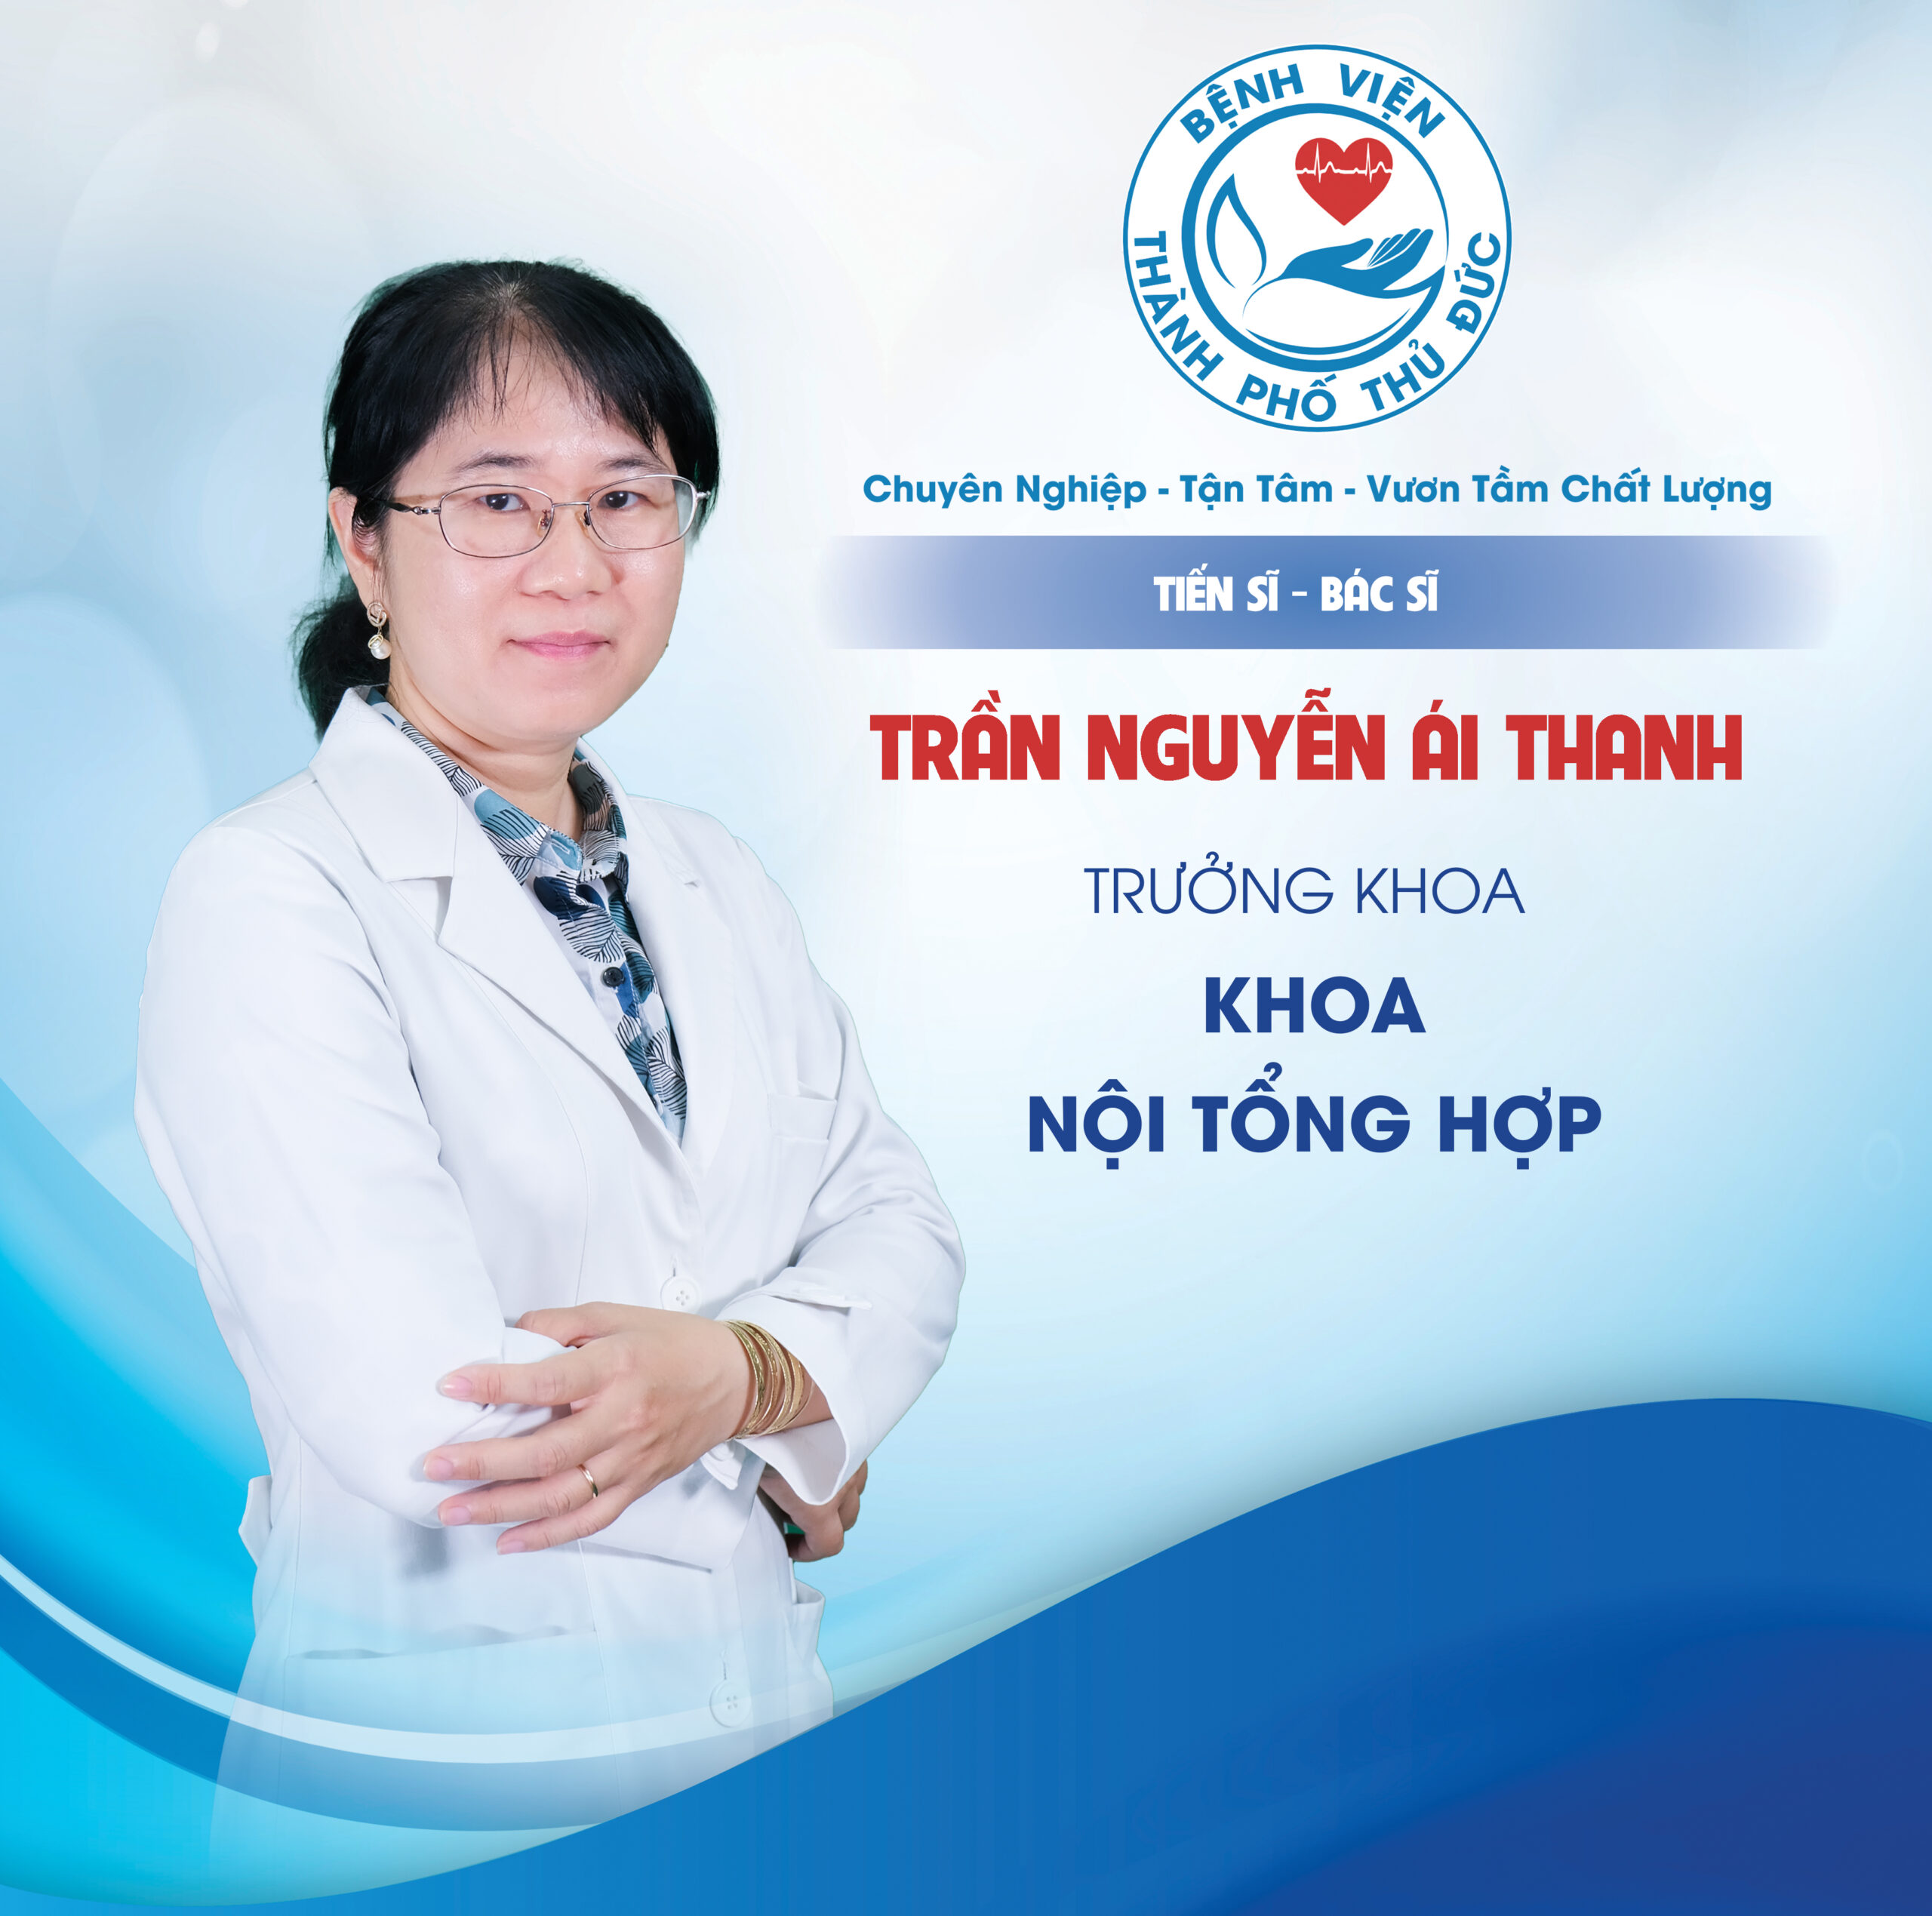 TS.BS Trần Nguyễn Ái Thanh - Trưởng khoa Nội tổng hợp